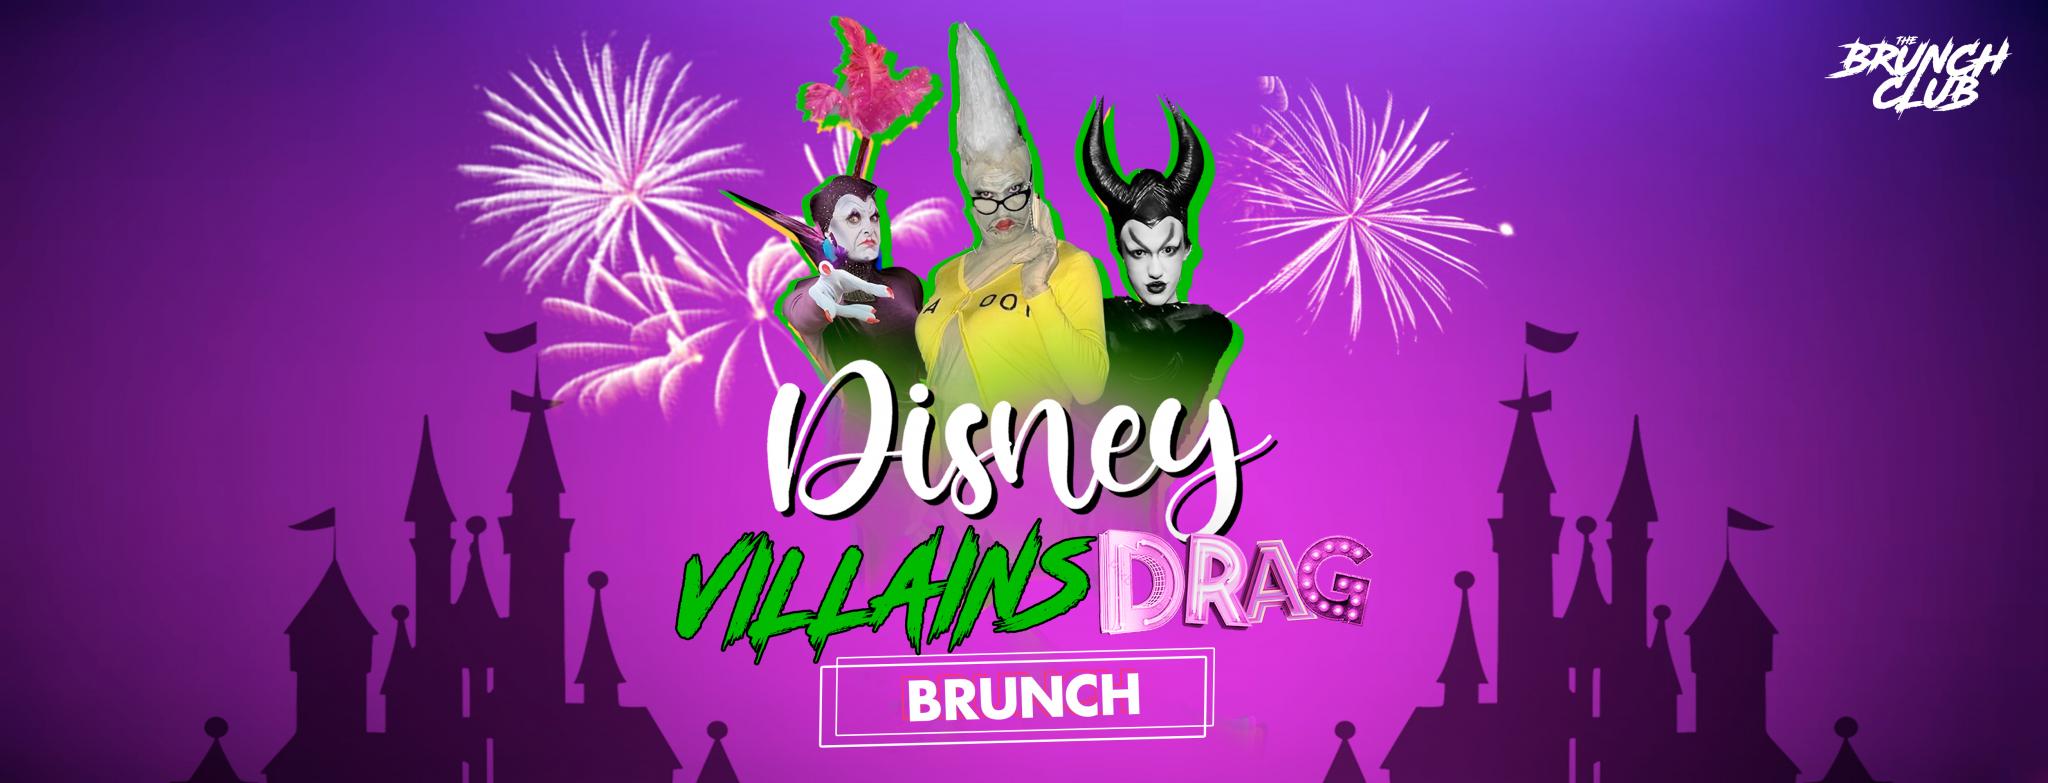 Disney Villains Drag Bottomless Brunch - Leicester